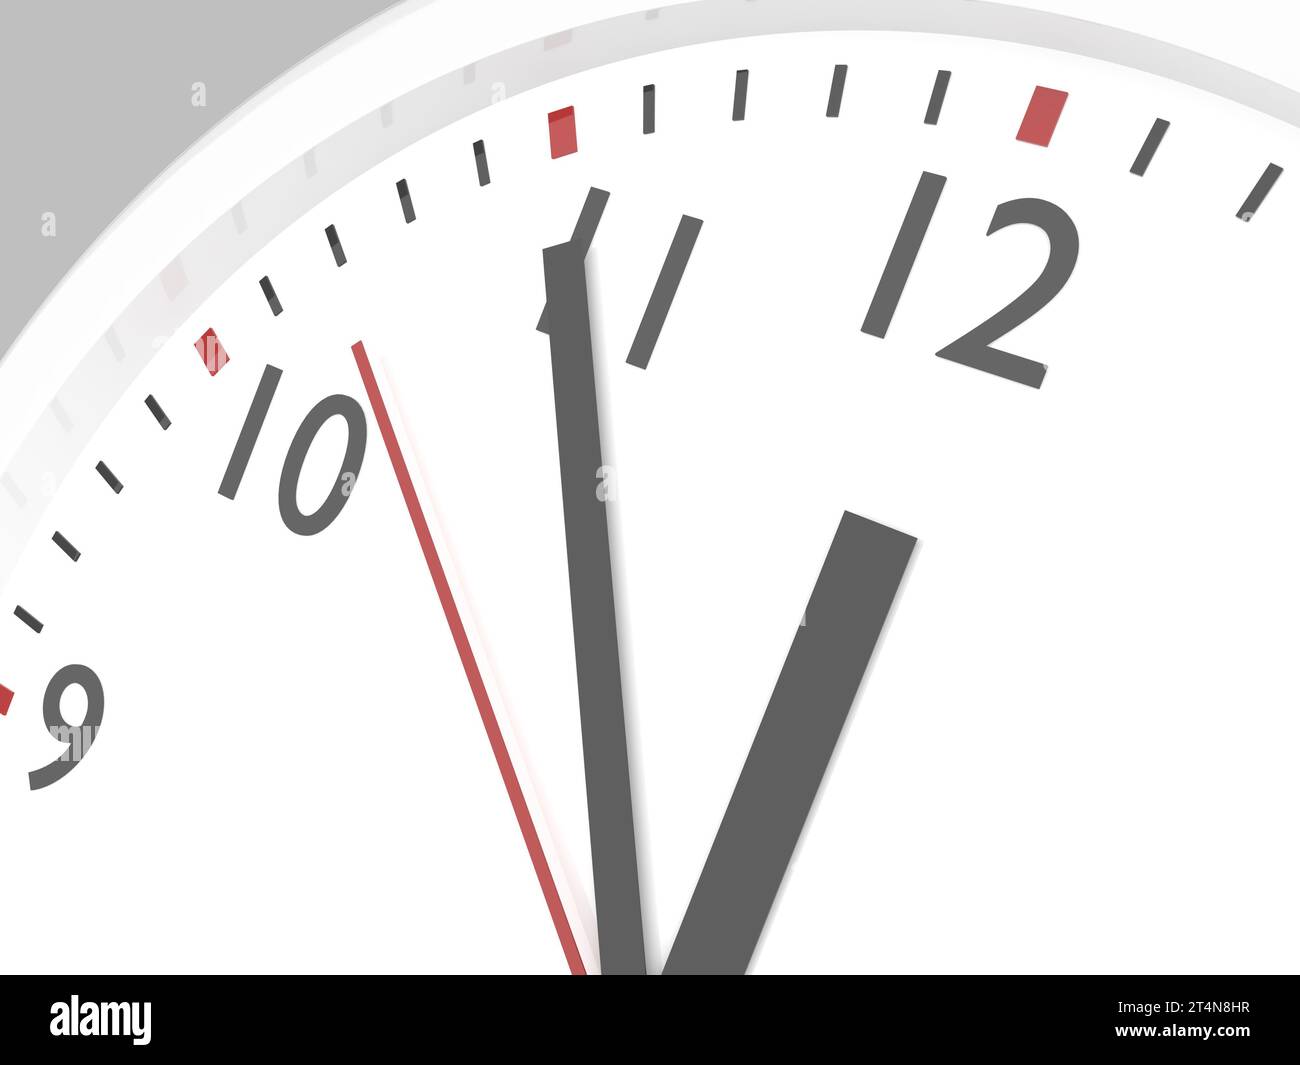 Nahaufnahme Eines einfachen Zifferblatts mit Stunden- und Minutenzeigern, die sich Mitternacht oder zwölf Uhr nähern. 3D-Abbildung. Stockfoto